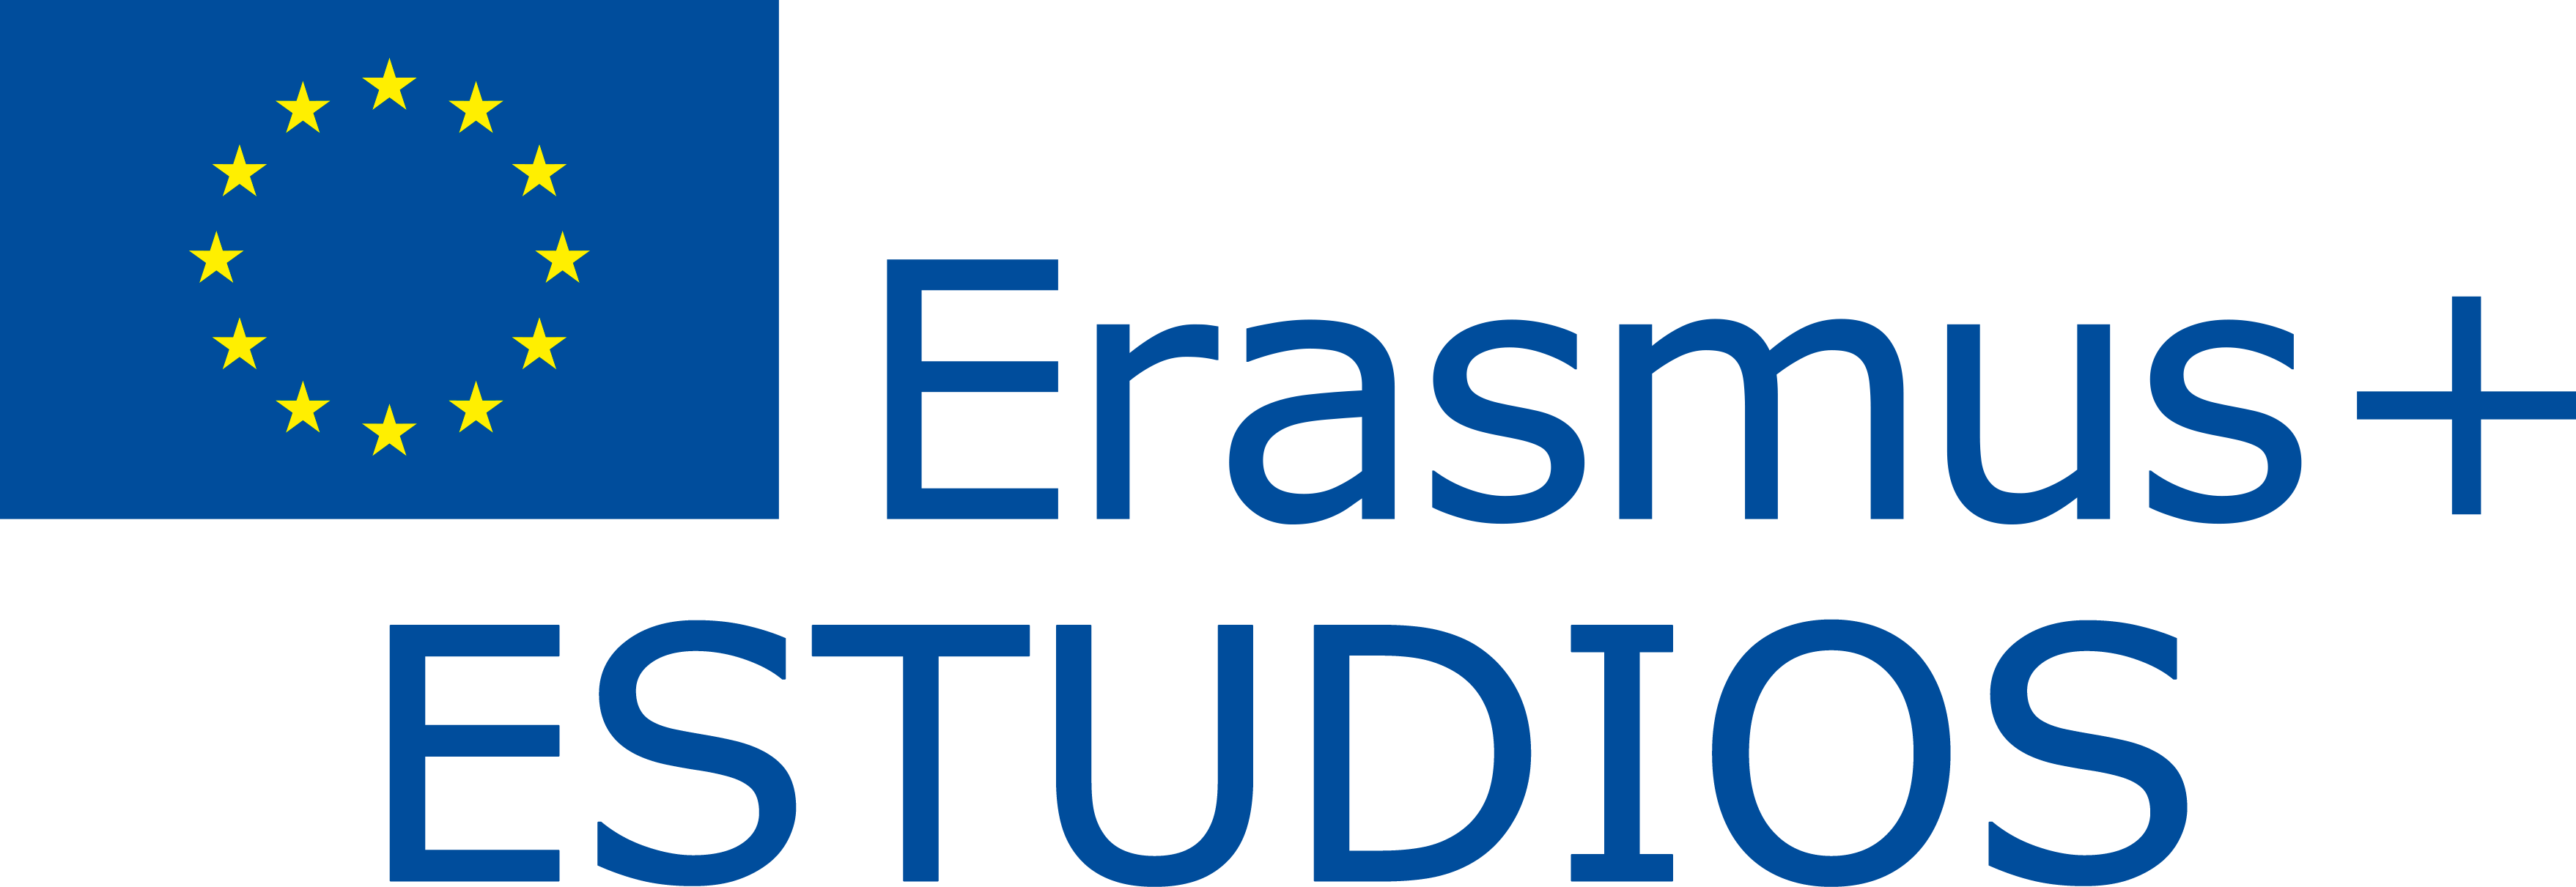 Actos de adjudicación de las plazas del programa Erasmus+ Estudios para el curso 2020/21 del 29 al 31 de enero en las distintas facultades de la UMU.